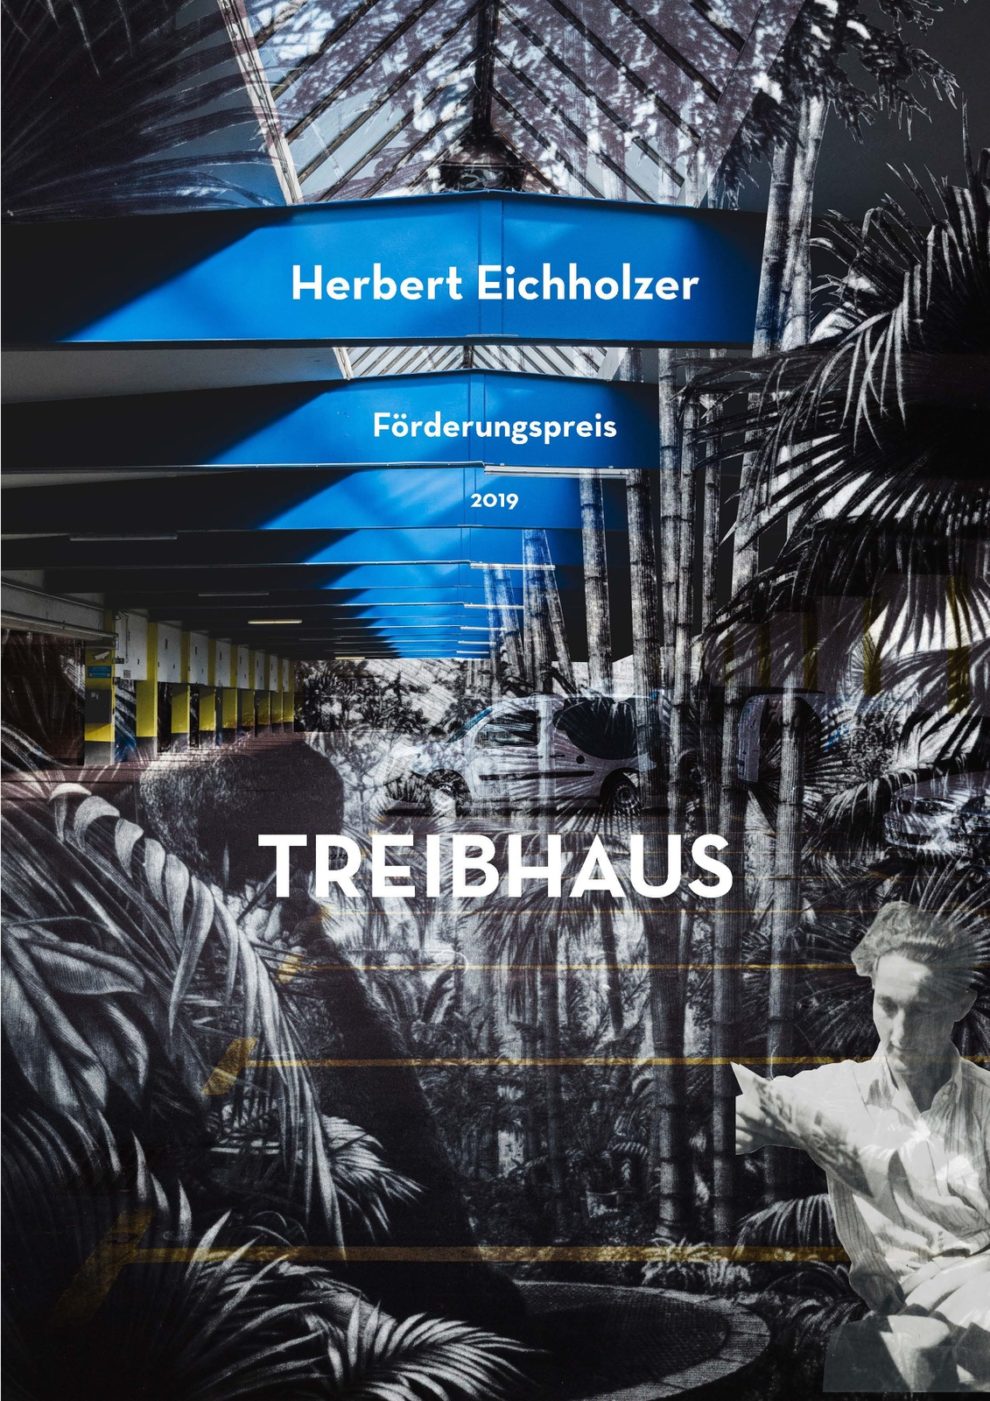 Herbert Eichholzer Architekturförderungspreis 2019